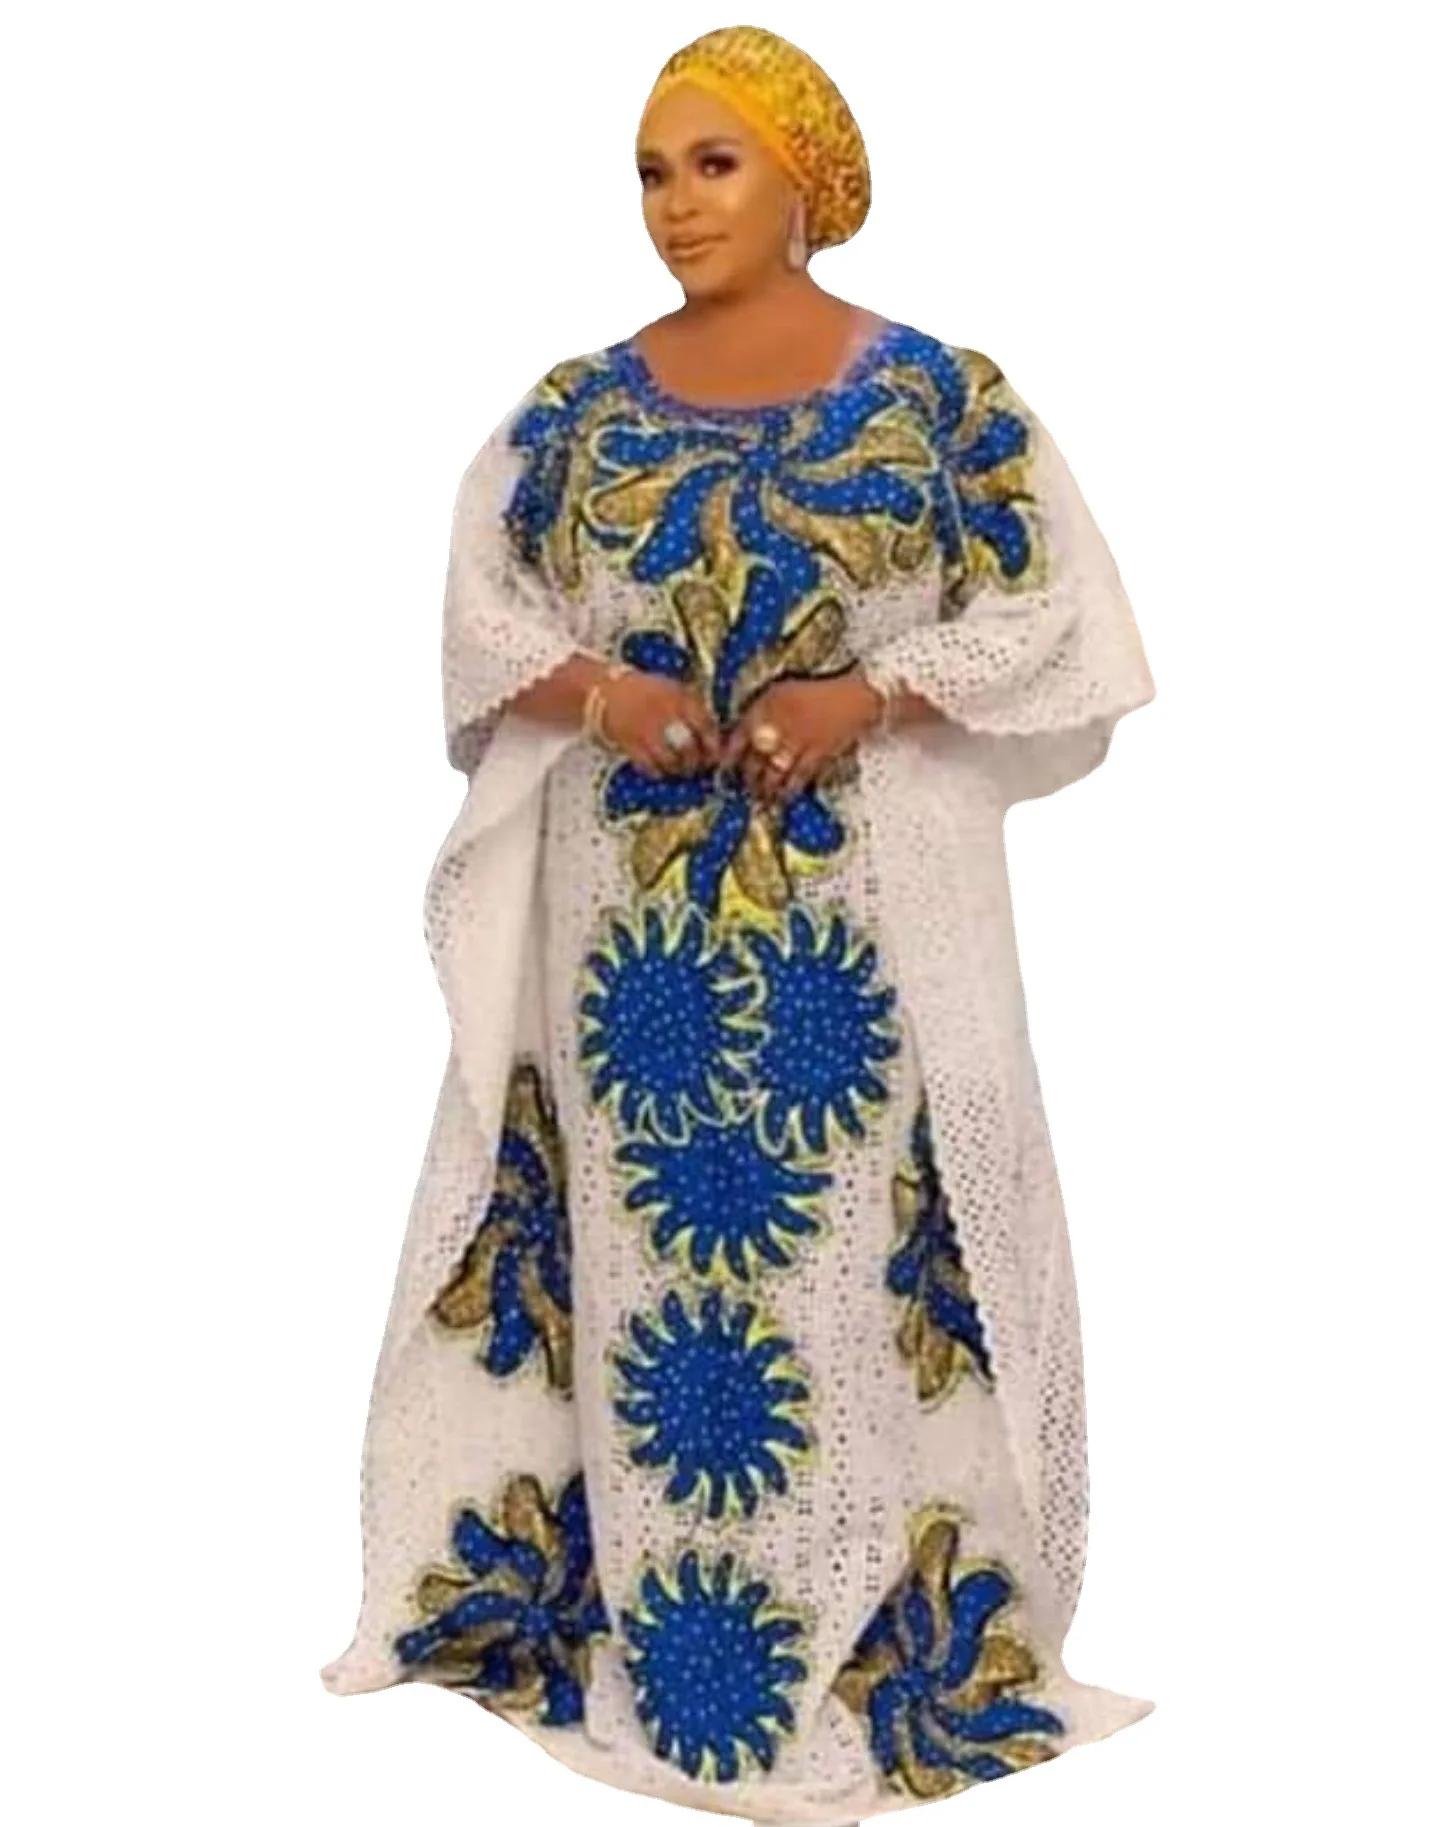 

Африканское кружевное платье Дашики, африканские платья для женщин, супер размер, традиционный халат Boubou, африканская одежда